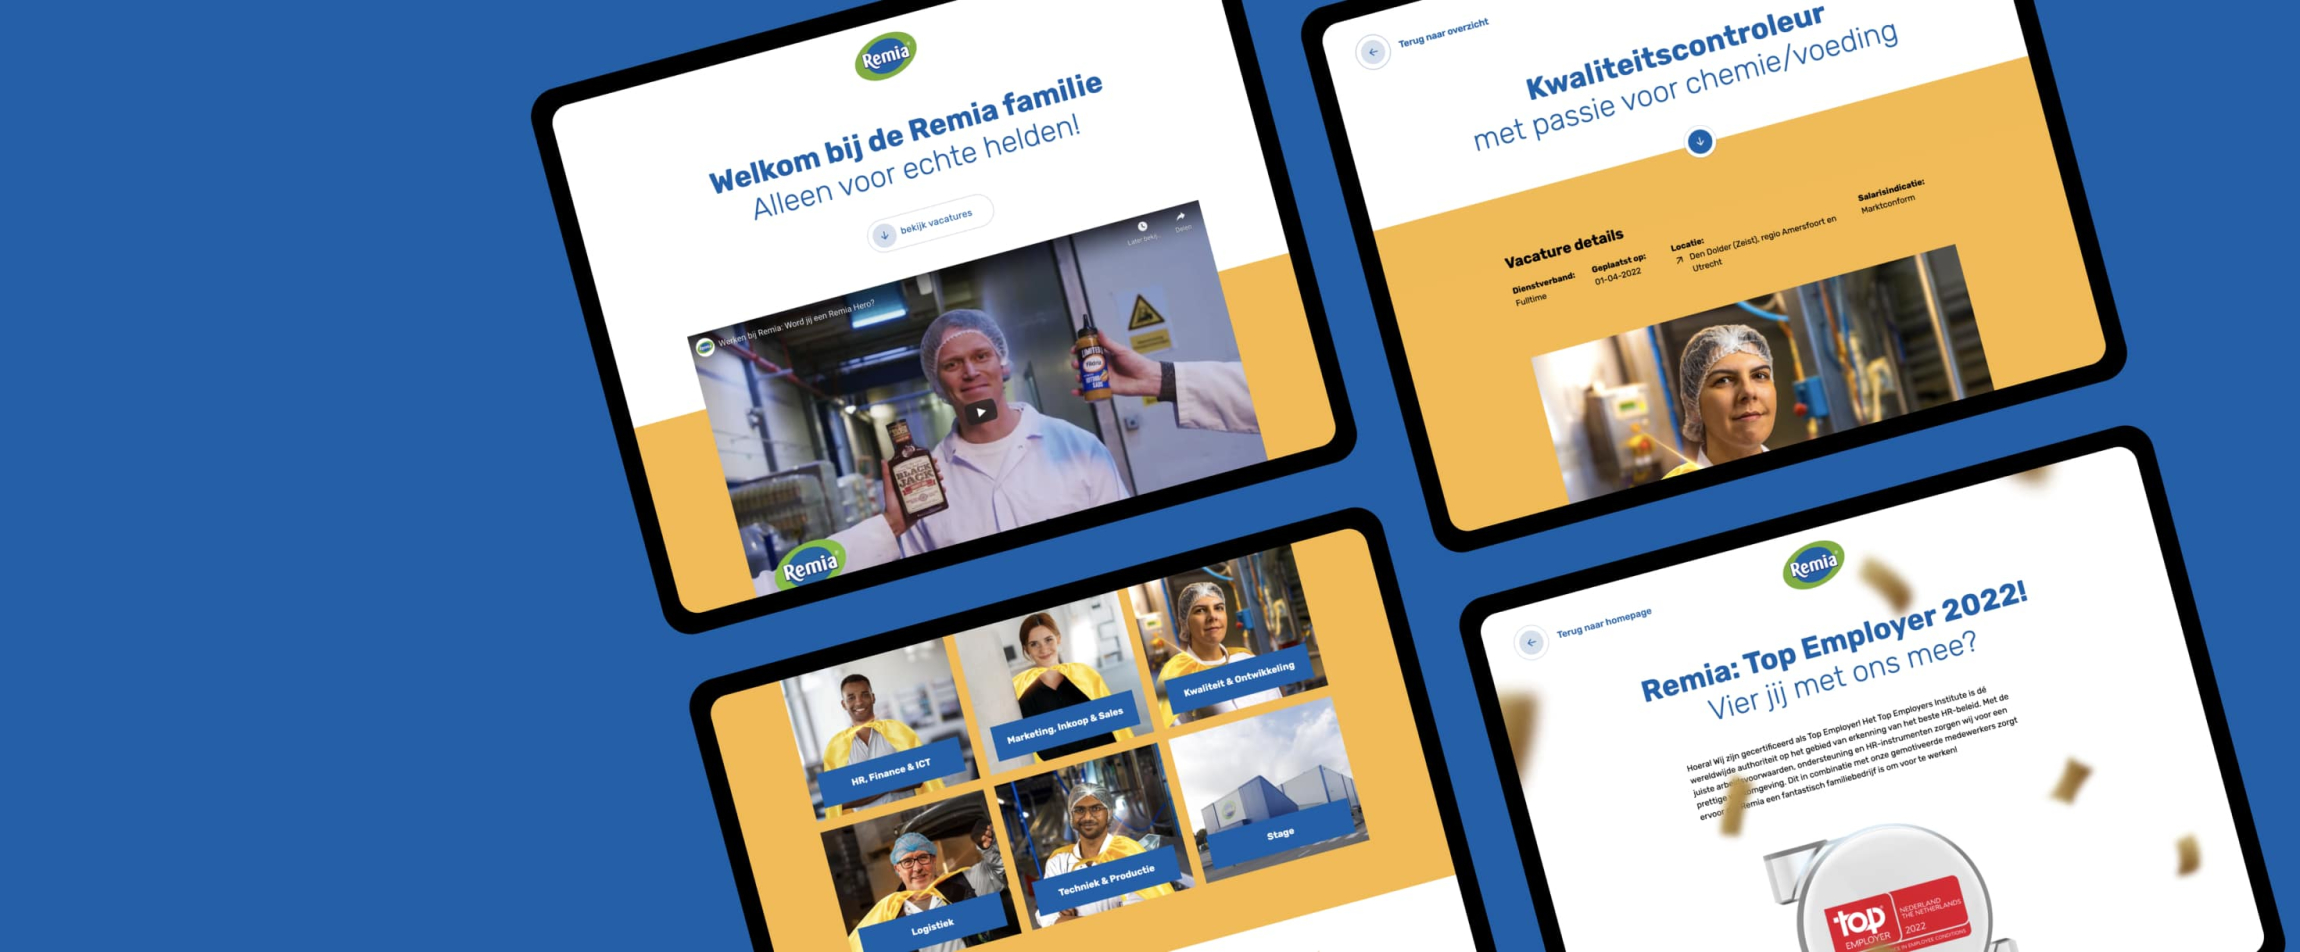 Vier pagina's van de Remia website getoond op tablets die op een blauwe achtergrond liggen. 